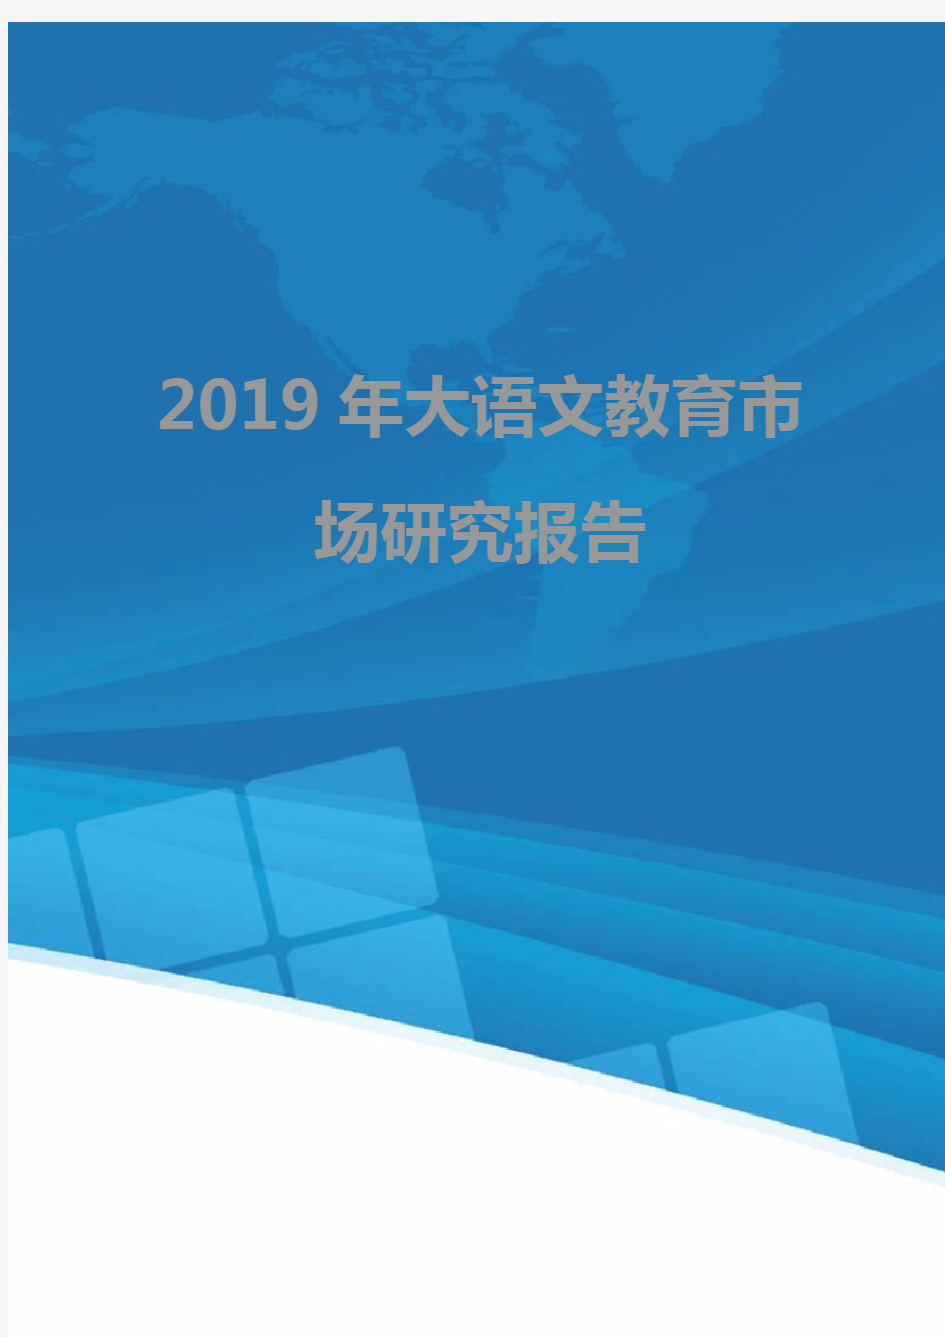 2019年大语文教育市场研究报告